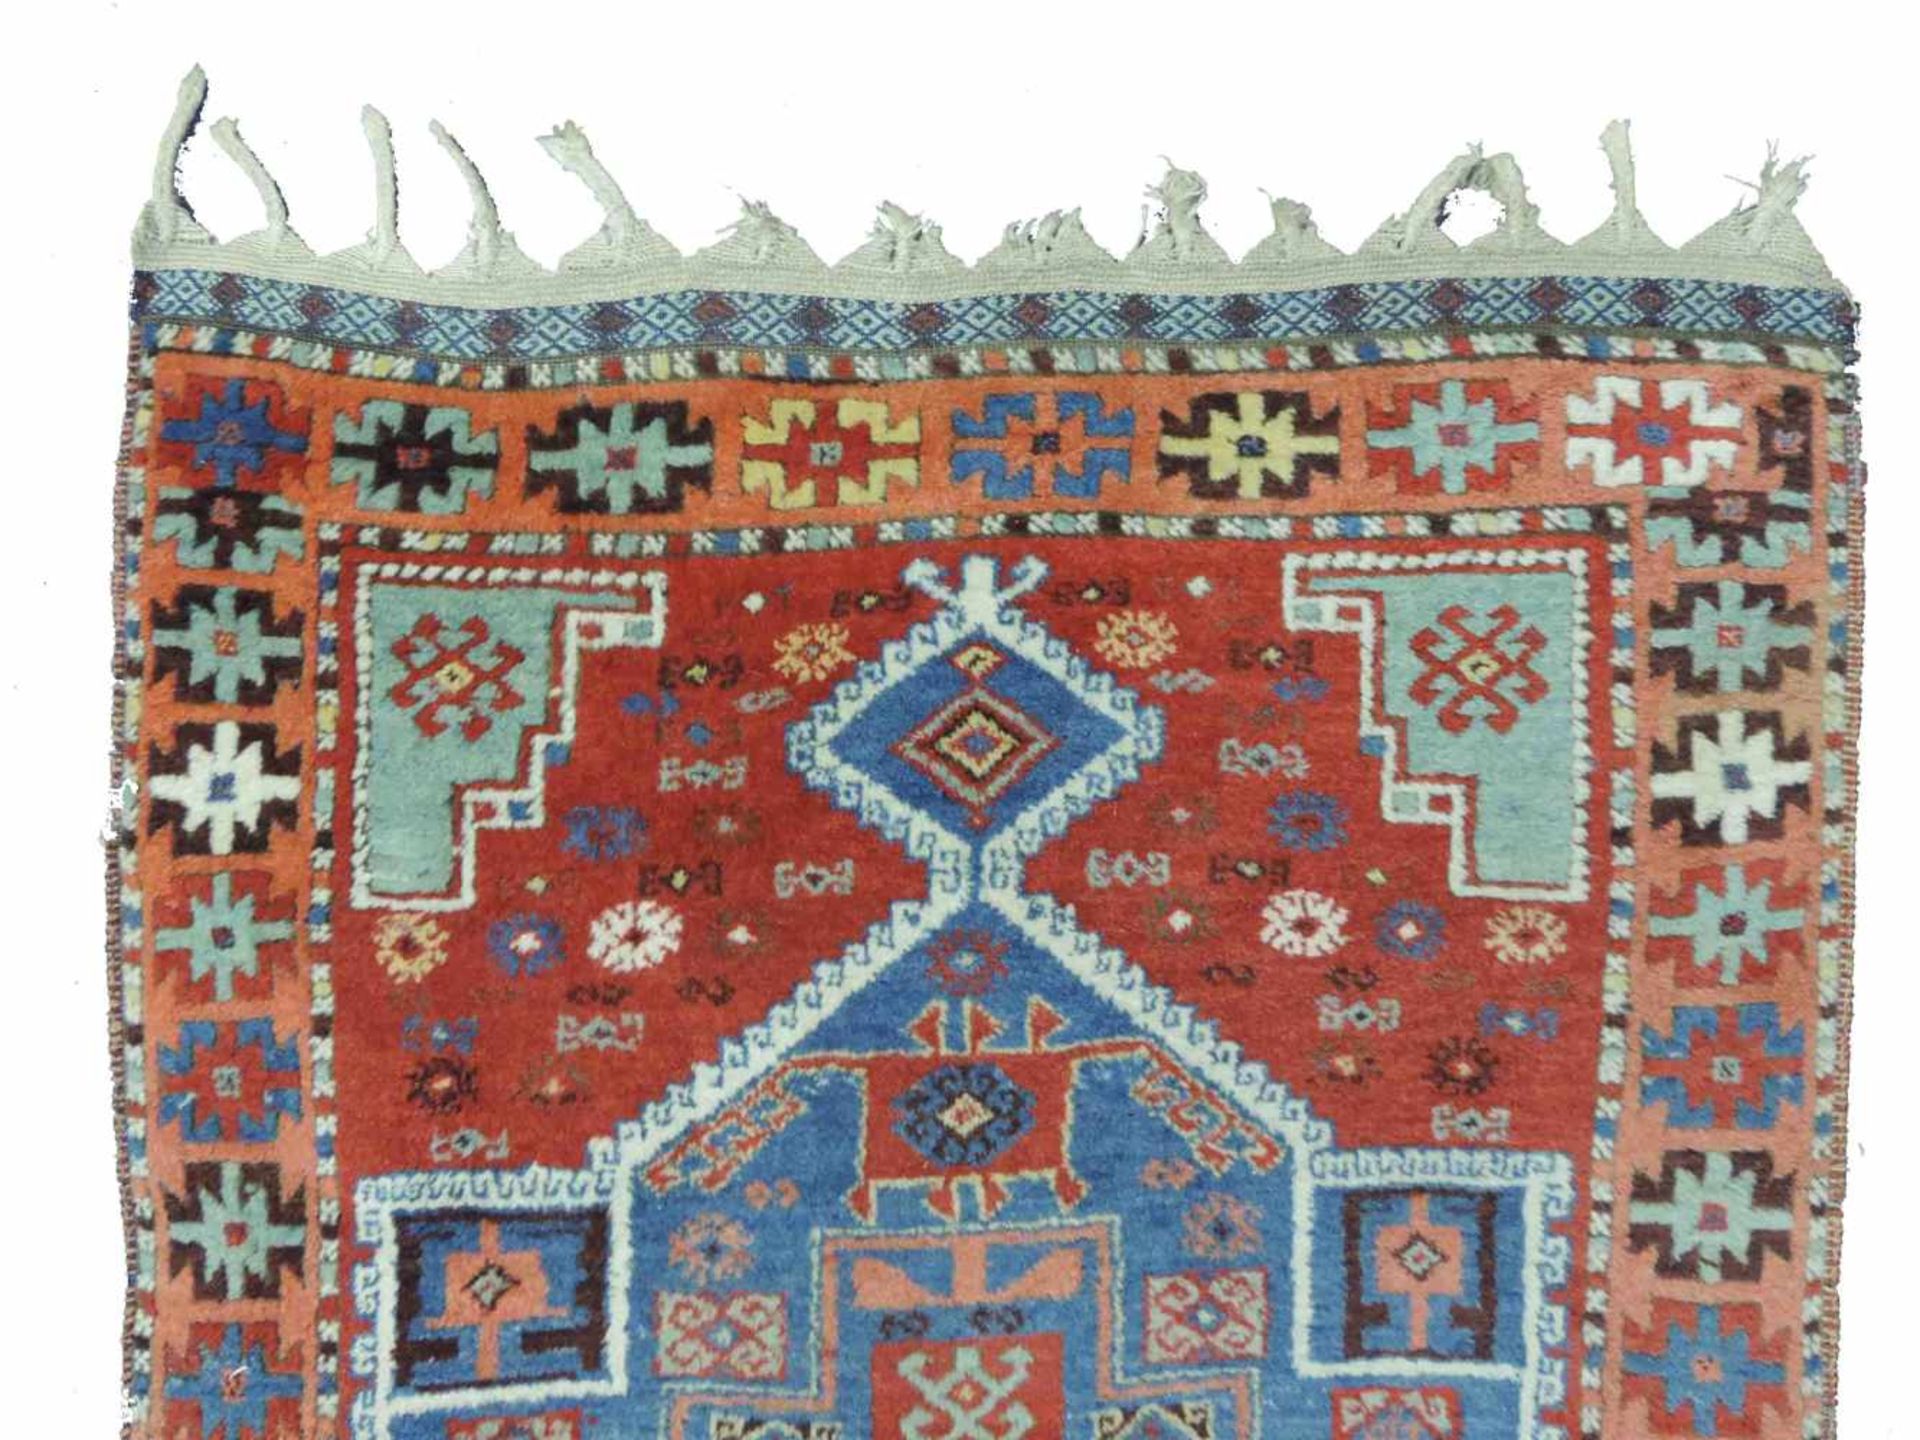 Yürük Stammesteppich. Ost - Anatolien. Türkei. Antik, um 1850 oder früher. 224 cm x 105 cm. - Bild 4 aus 6